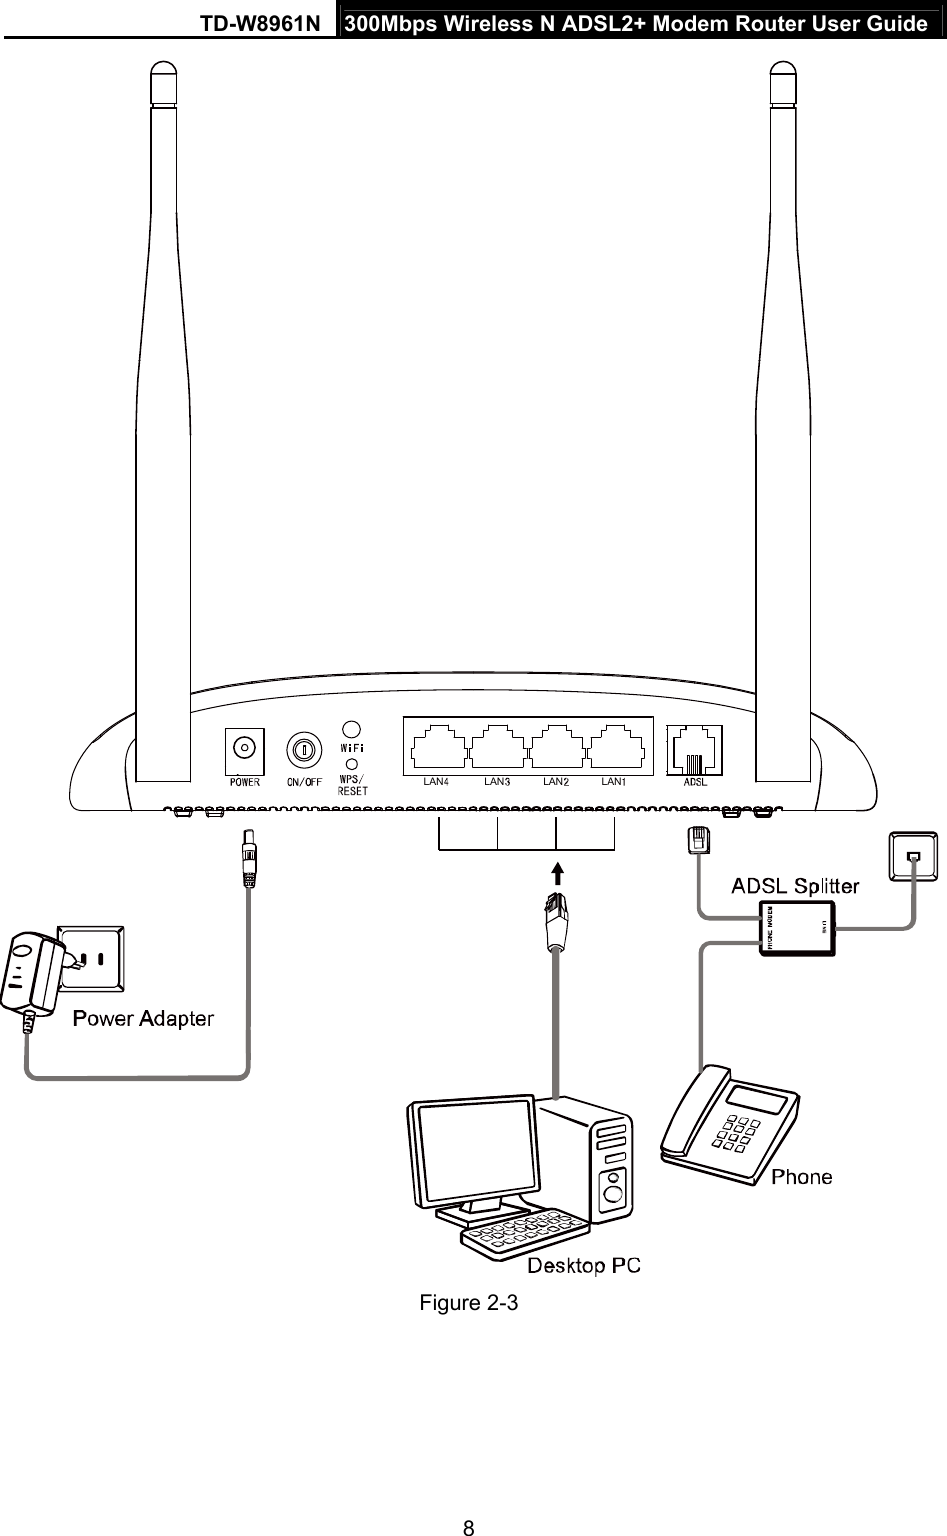 TD-W8961N  300Mbps Wireless N ADSL2+ Modem Router User Guide 8  LAN LAN LAN LAN Figure 2-3 